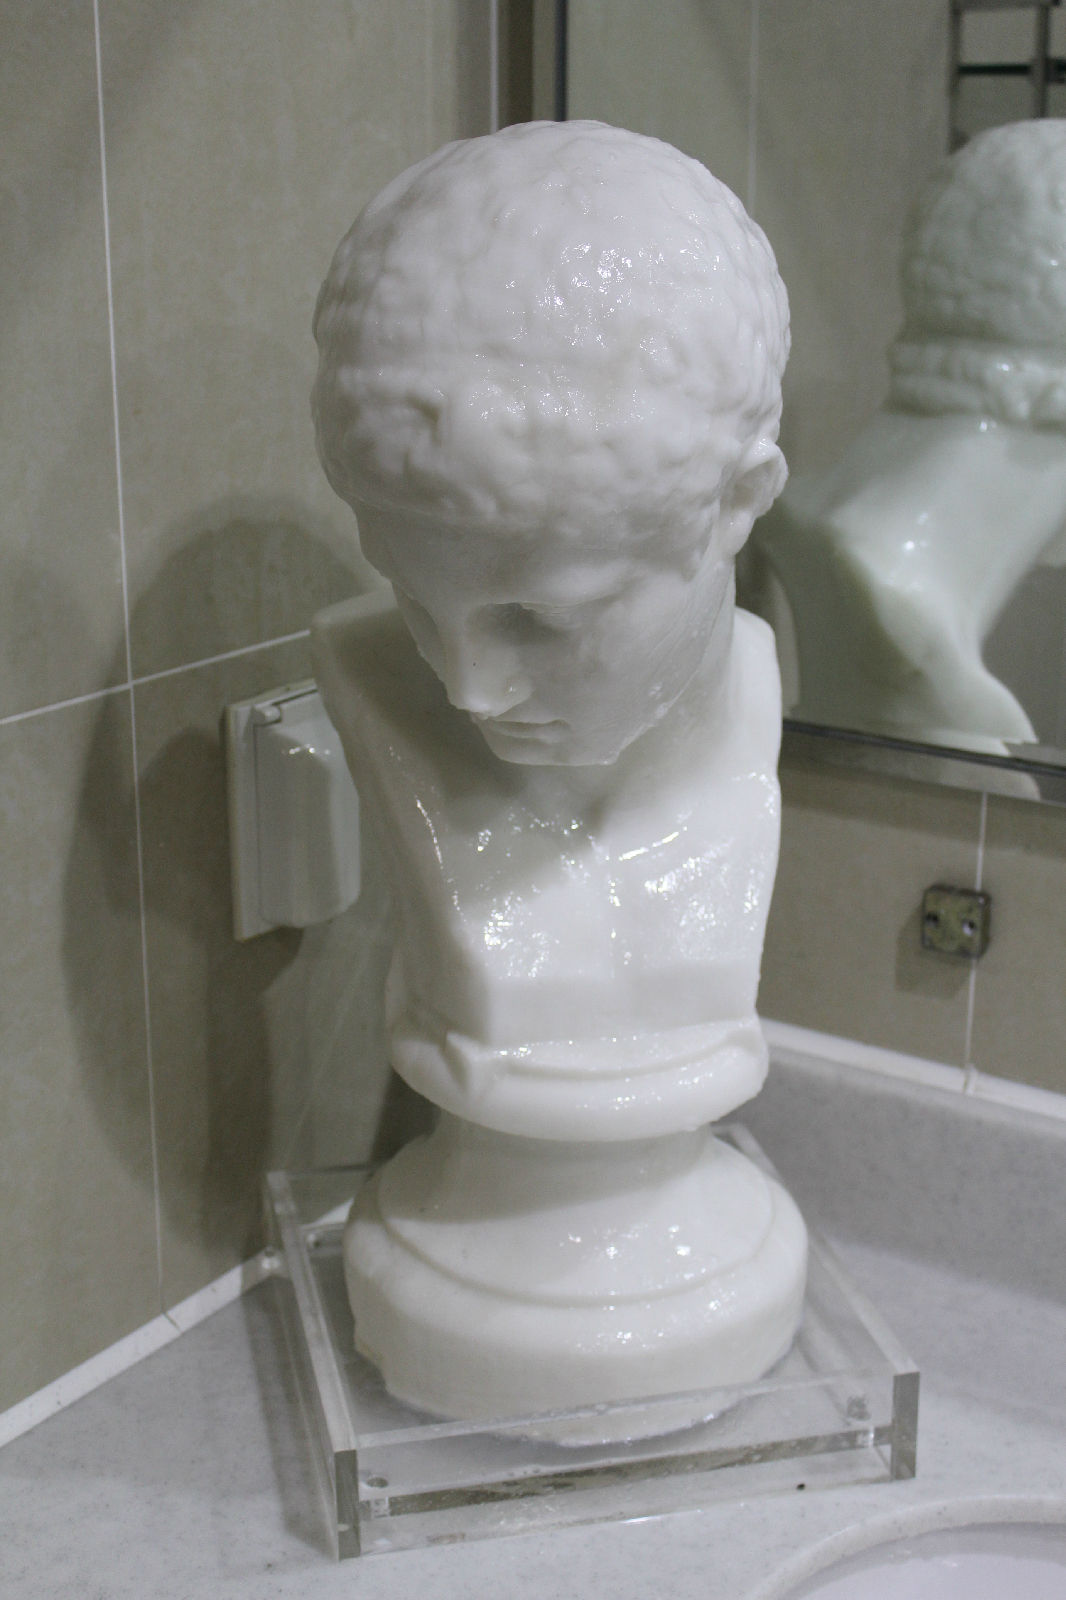 미술관 내 화장실에서 ‘화장실 프로젝트’를 직접 체험해 볼 수 있다.